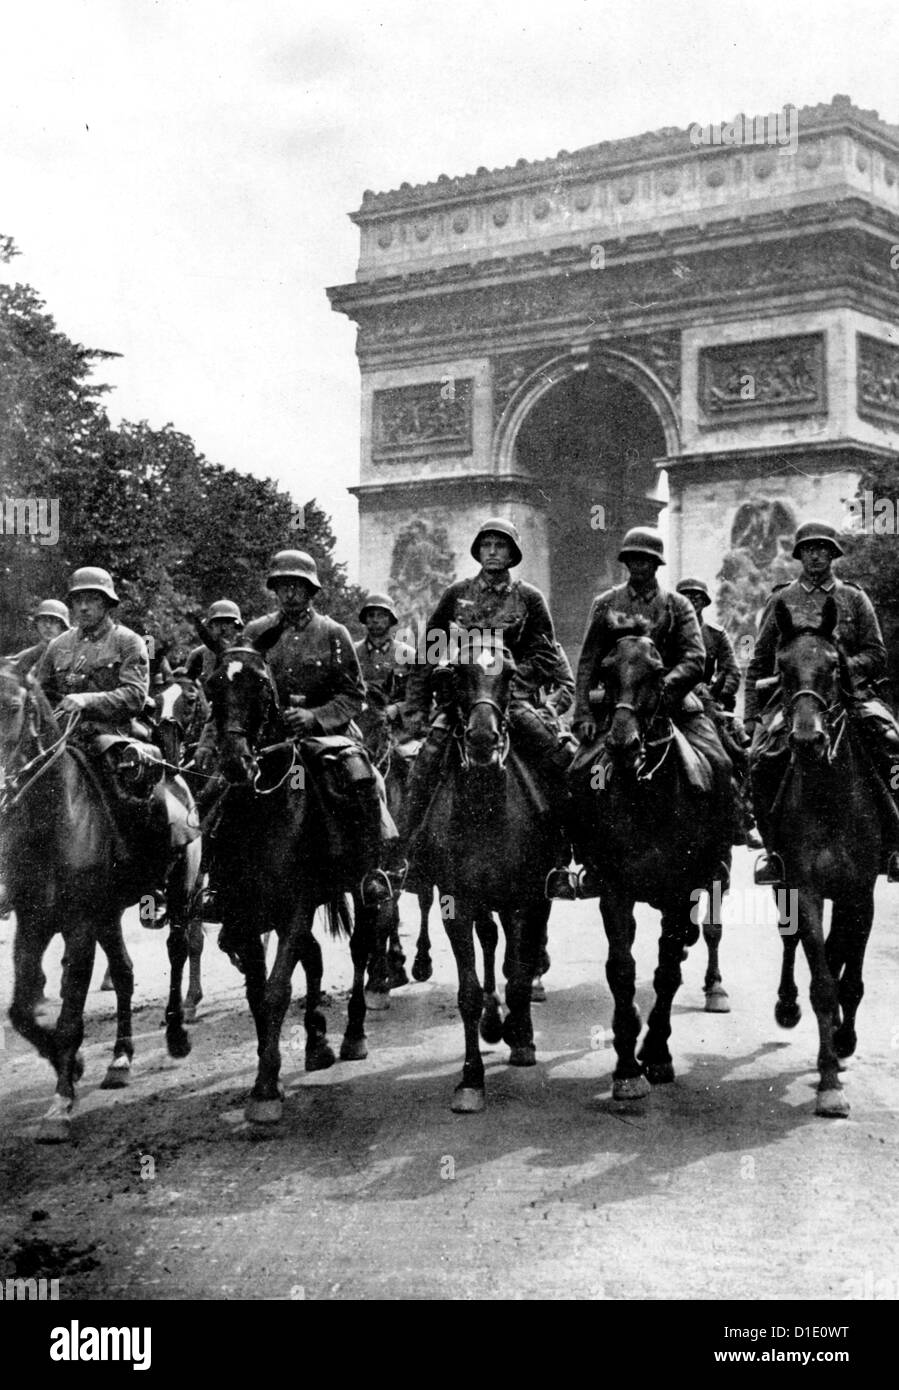 Soldati della Wehrmacht tedesca della bassa Sassonia sono raffigurati di fronte all'Arco di Trionfo durante l'invasione tedesca di Parigi, Francia, 14 giugno 1940. Fotoarchiv für Zeitgeschichte Foto Stock